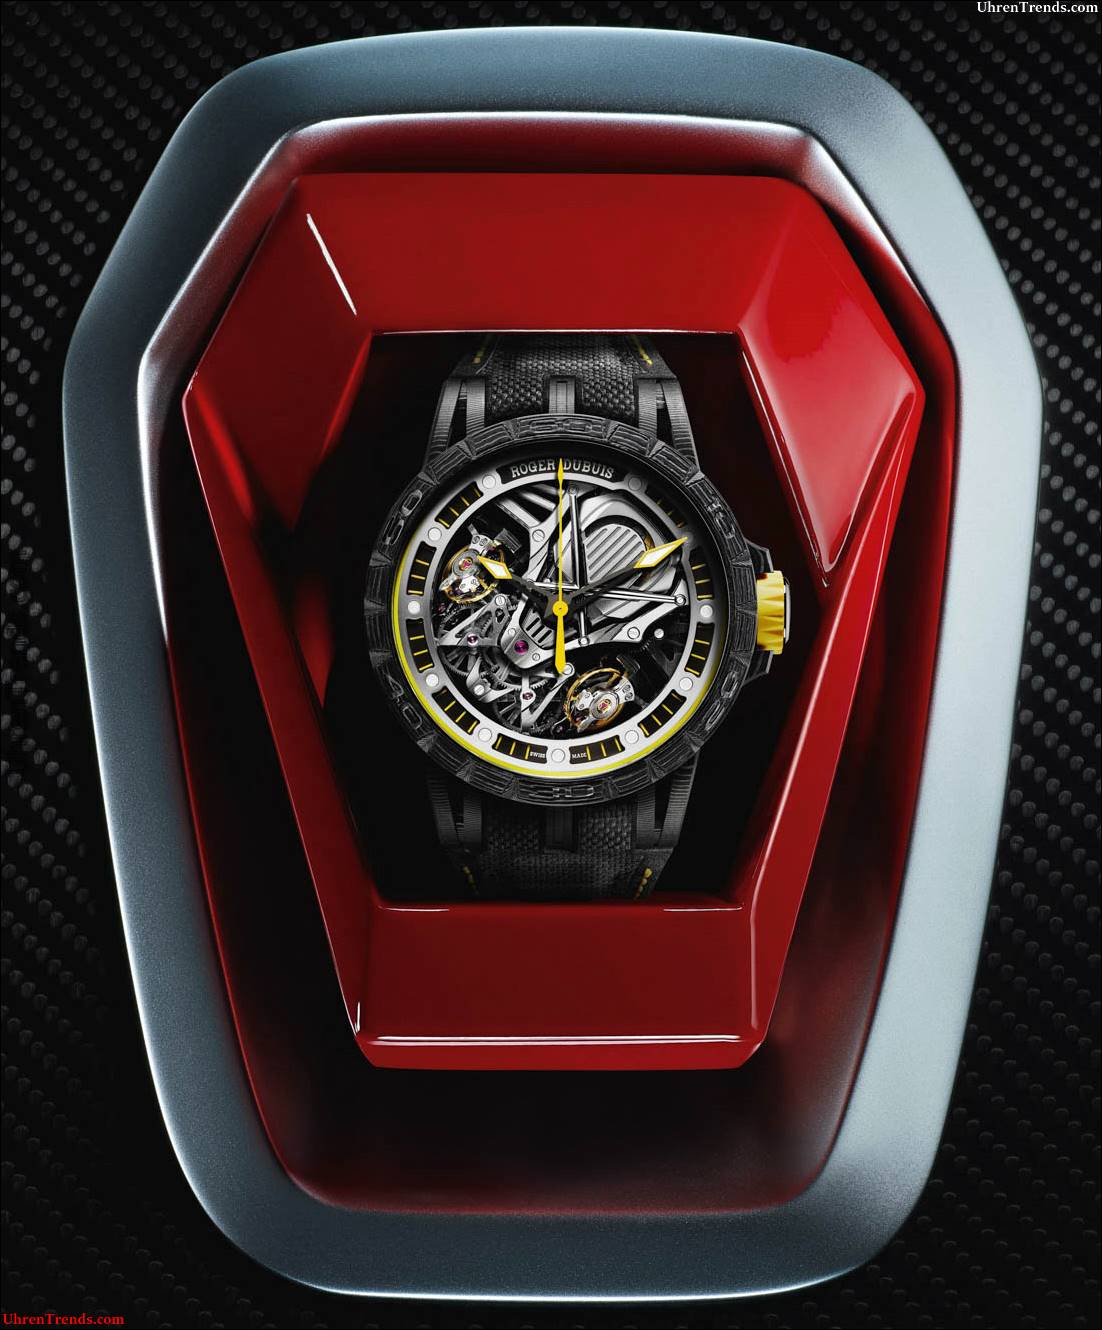 Roger Dubuis wird offizieller Partner von Lamborghini, führt 2 Uhren mit komplett neuem Duotor-Kaliber ein  